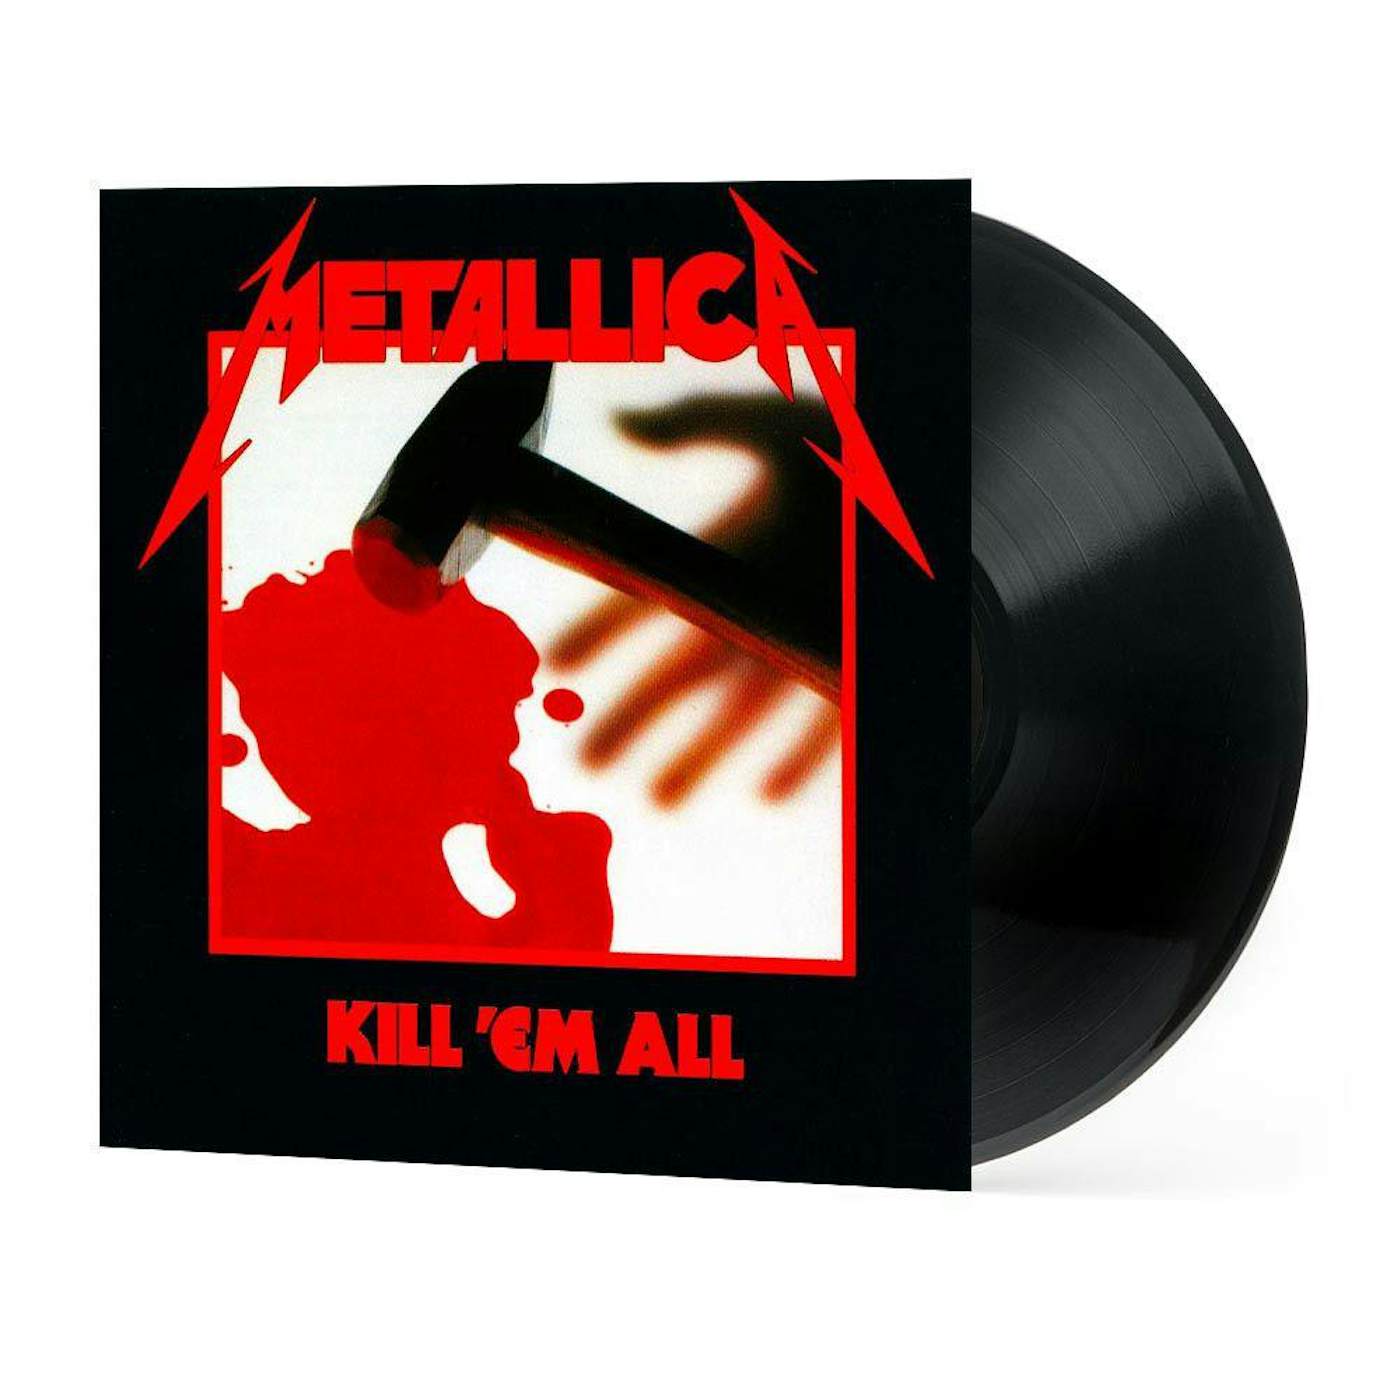 Vinile Colorato Kill 'Em All dei Metallica  Universal Music Shop –  Universal Music Italia